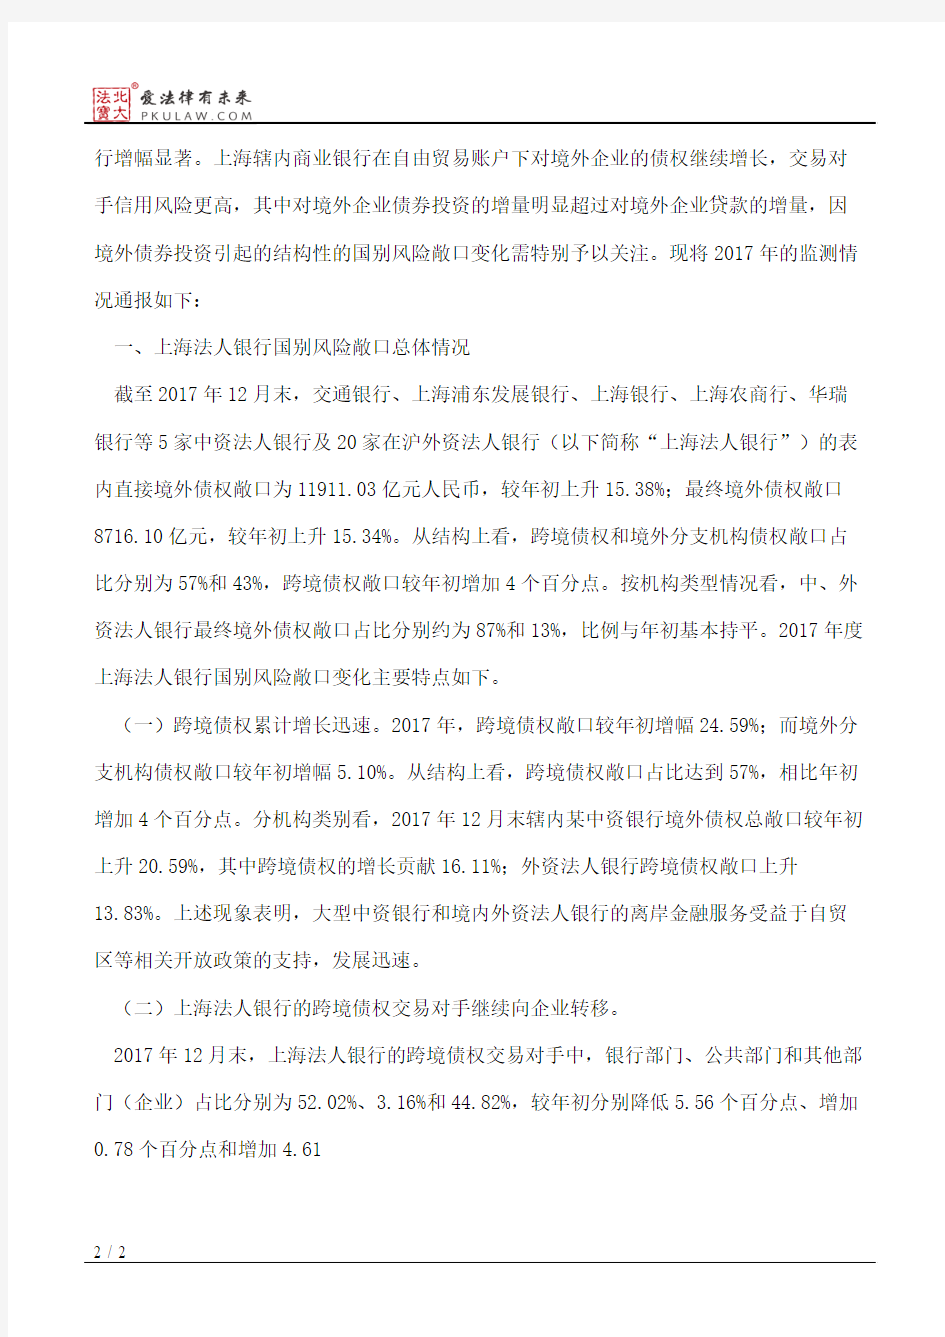 上海银监局办公室关于上海银行业2017年国别风险监测情况的通报